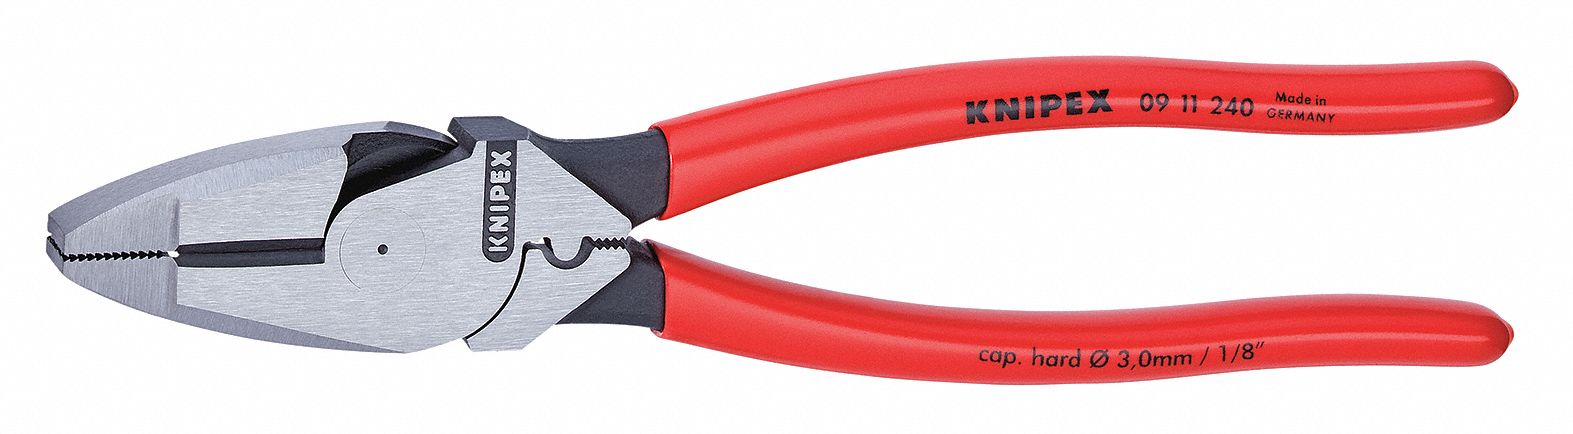 KNIPEX Pinzas de Electricista 9-1/4 Rojo - Pinzas para